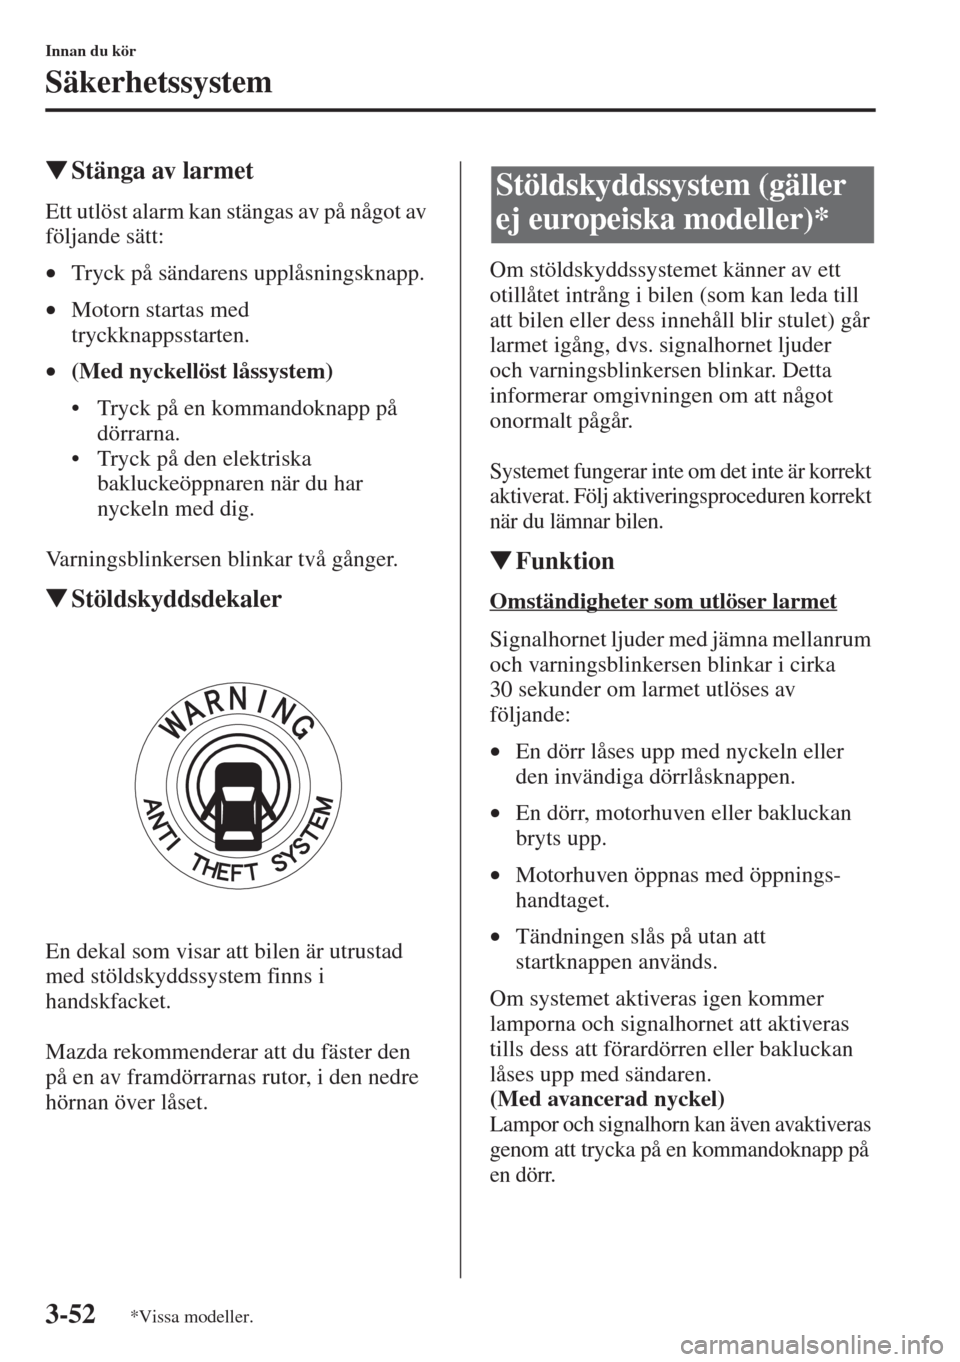 MAZDA MODEL CX-5 2015  Ägarmanual (in Swedish) 3-52
Innan du kör
Säkerhetssystem
�WStänga av larmet
Ett utlöst alarm kan stängas av på något av 
följande sätt:
•Tryck på sändarens upplåsningsknapp.
•Motorn startas med 
tryckknappss